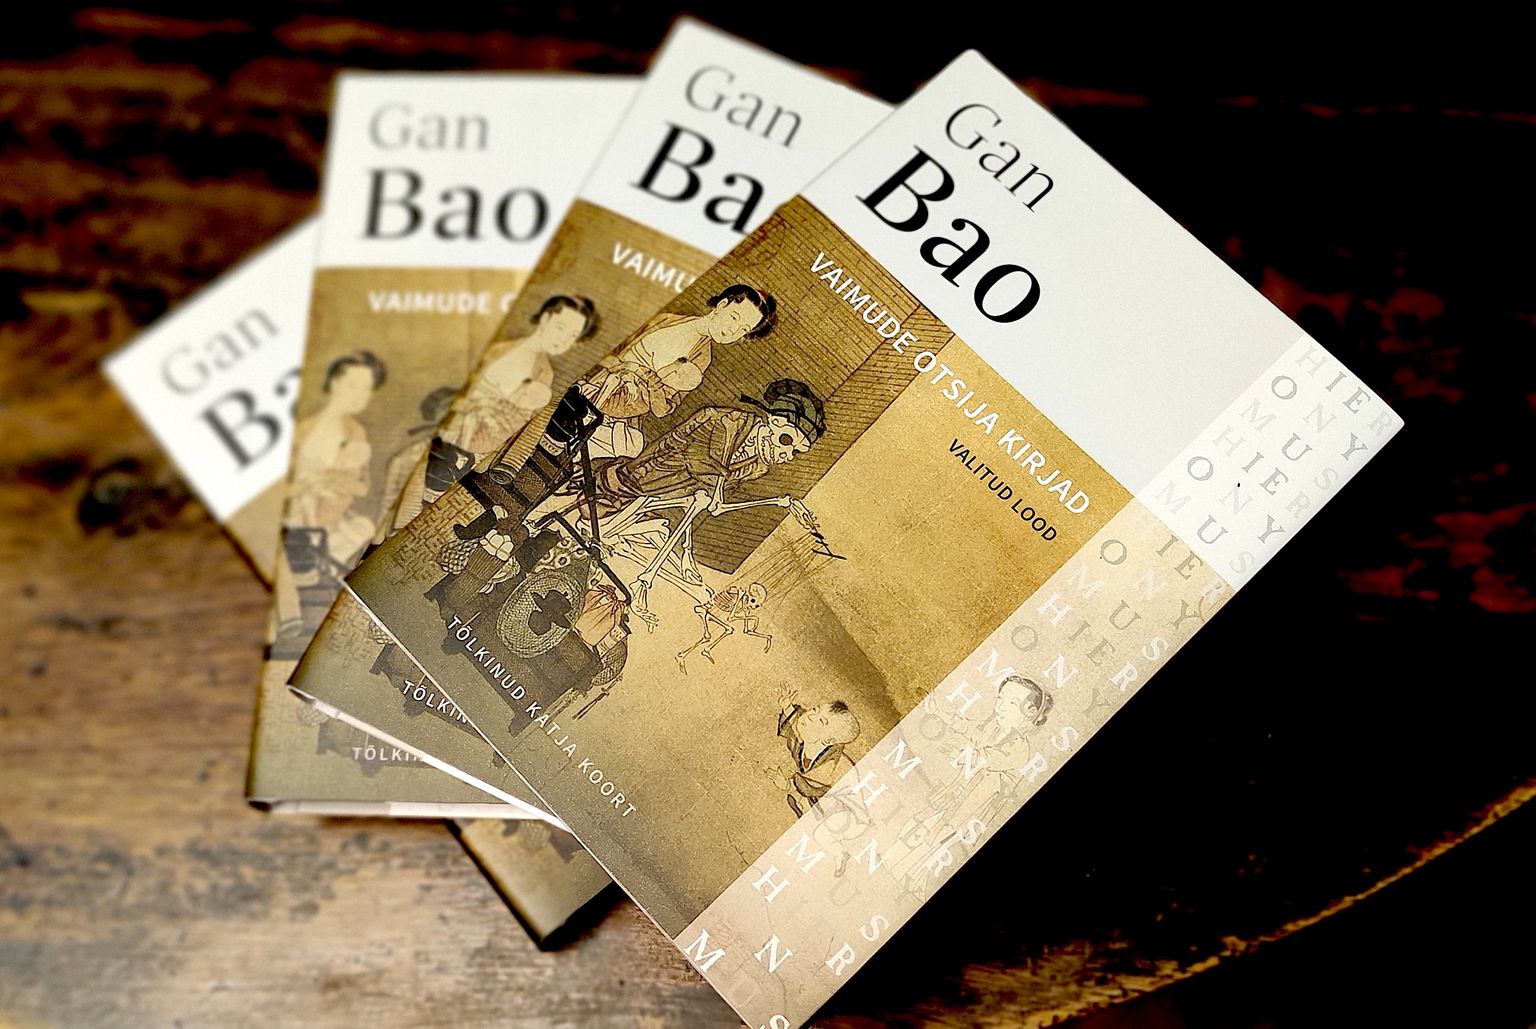 Gan Bao raamat "Vaimude otsija kirjad". Vanahiina keelest Katja Koort.